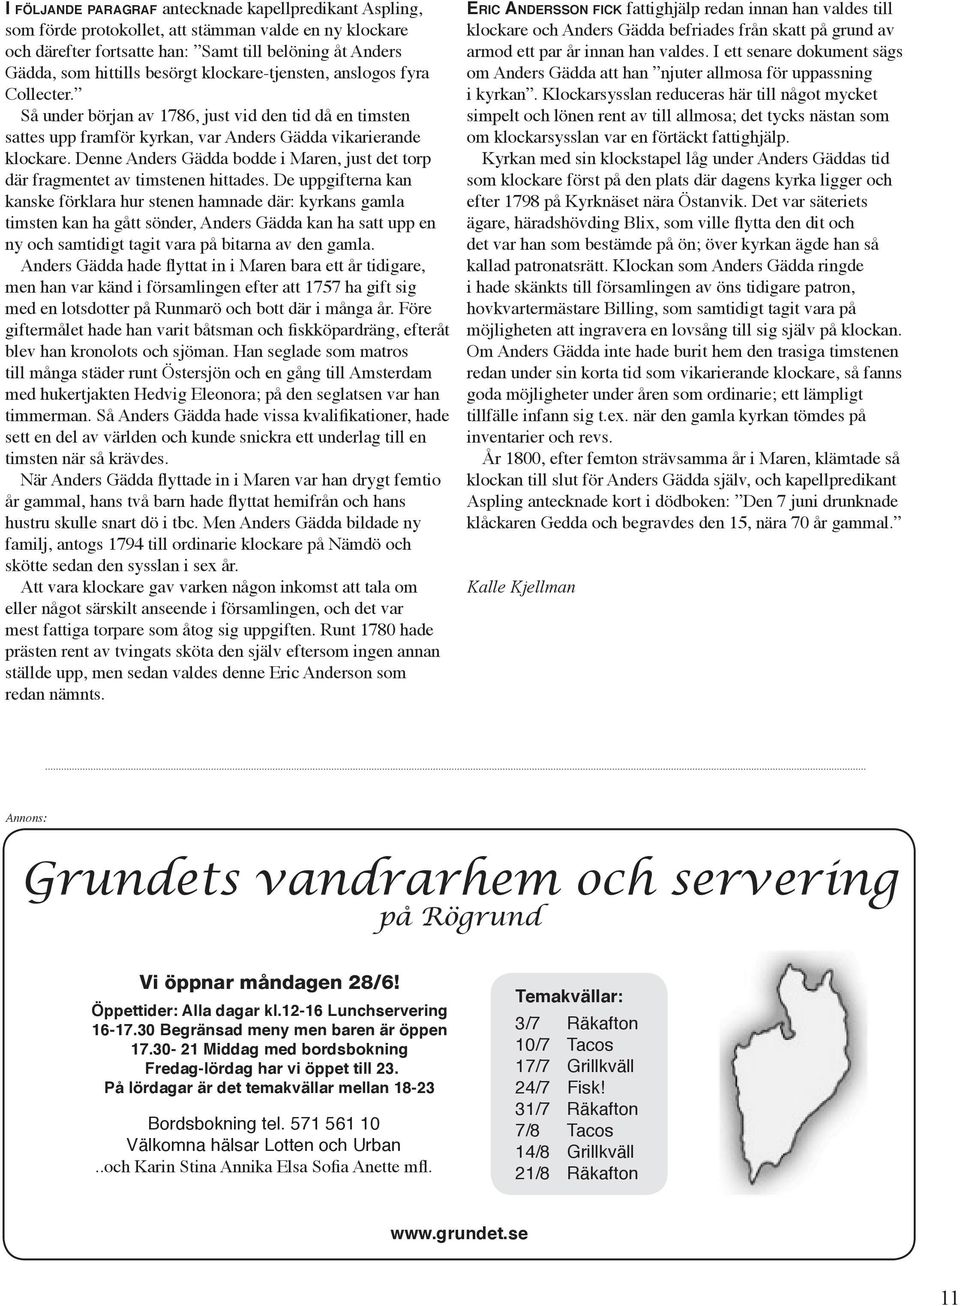 Denne Anders Gädda bodde i Maren, just det torp där fragmentet av timstenen hittades.